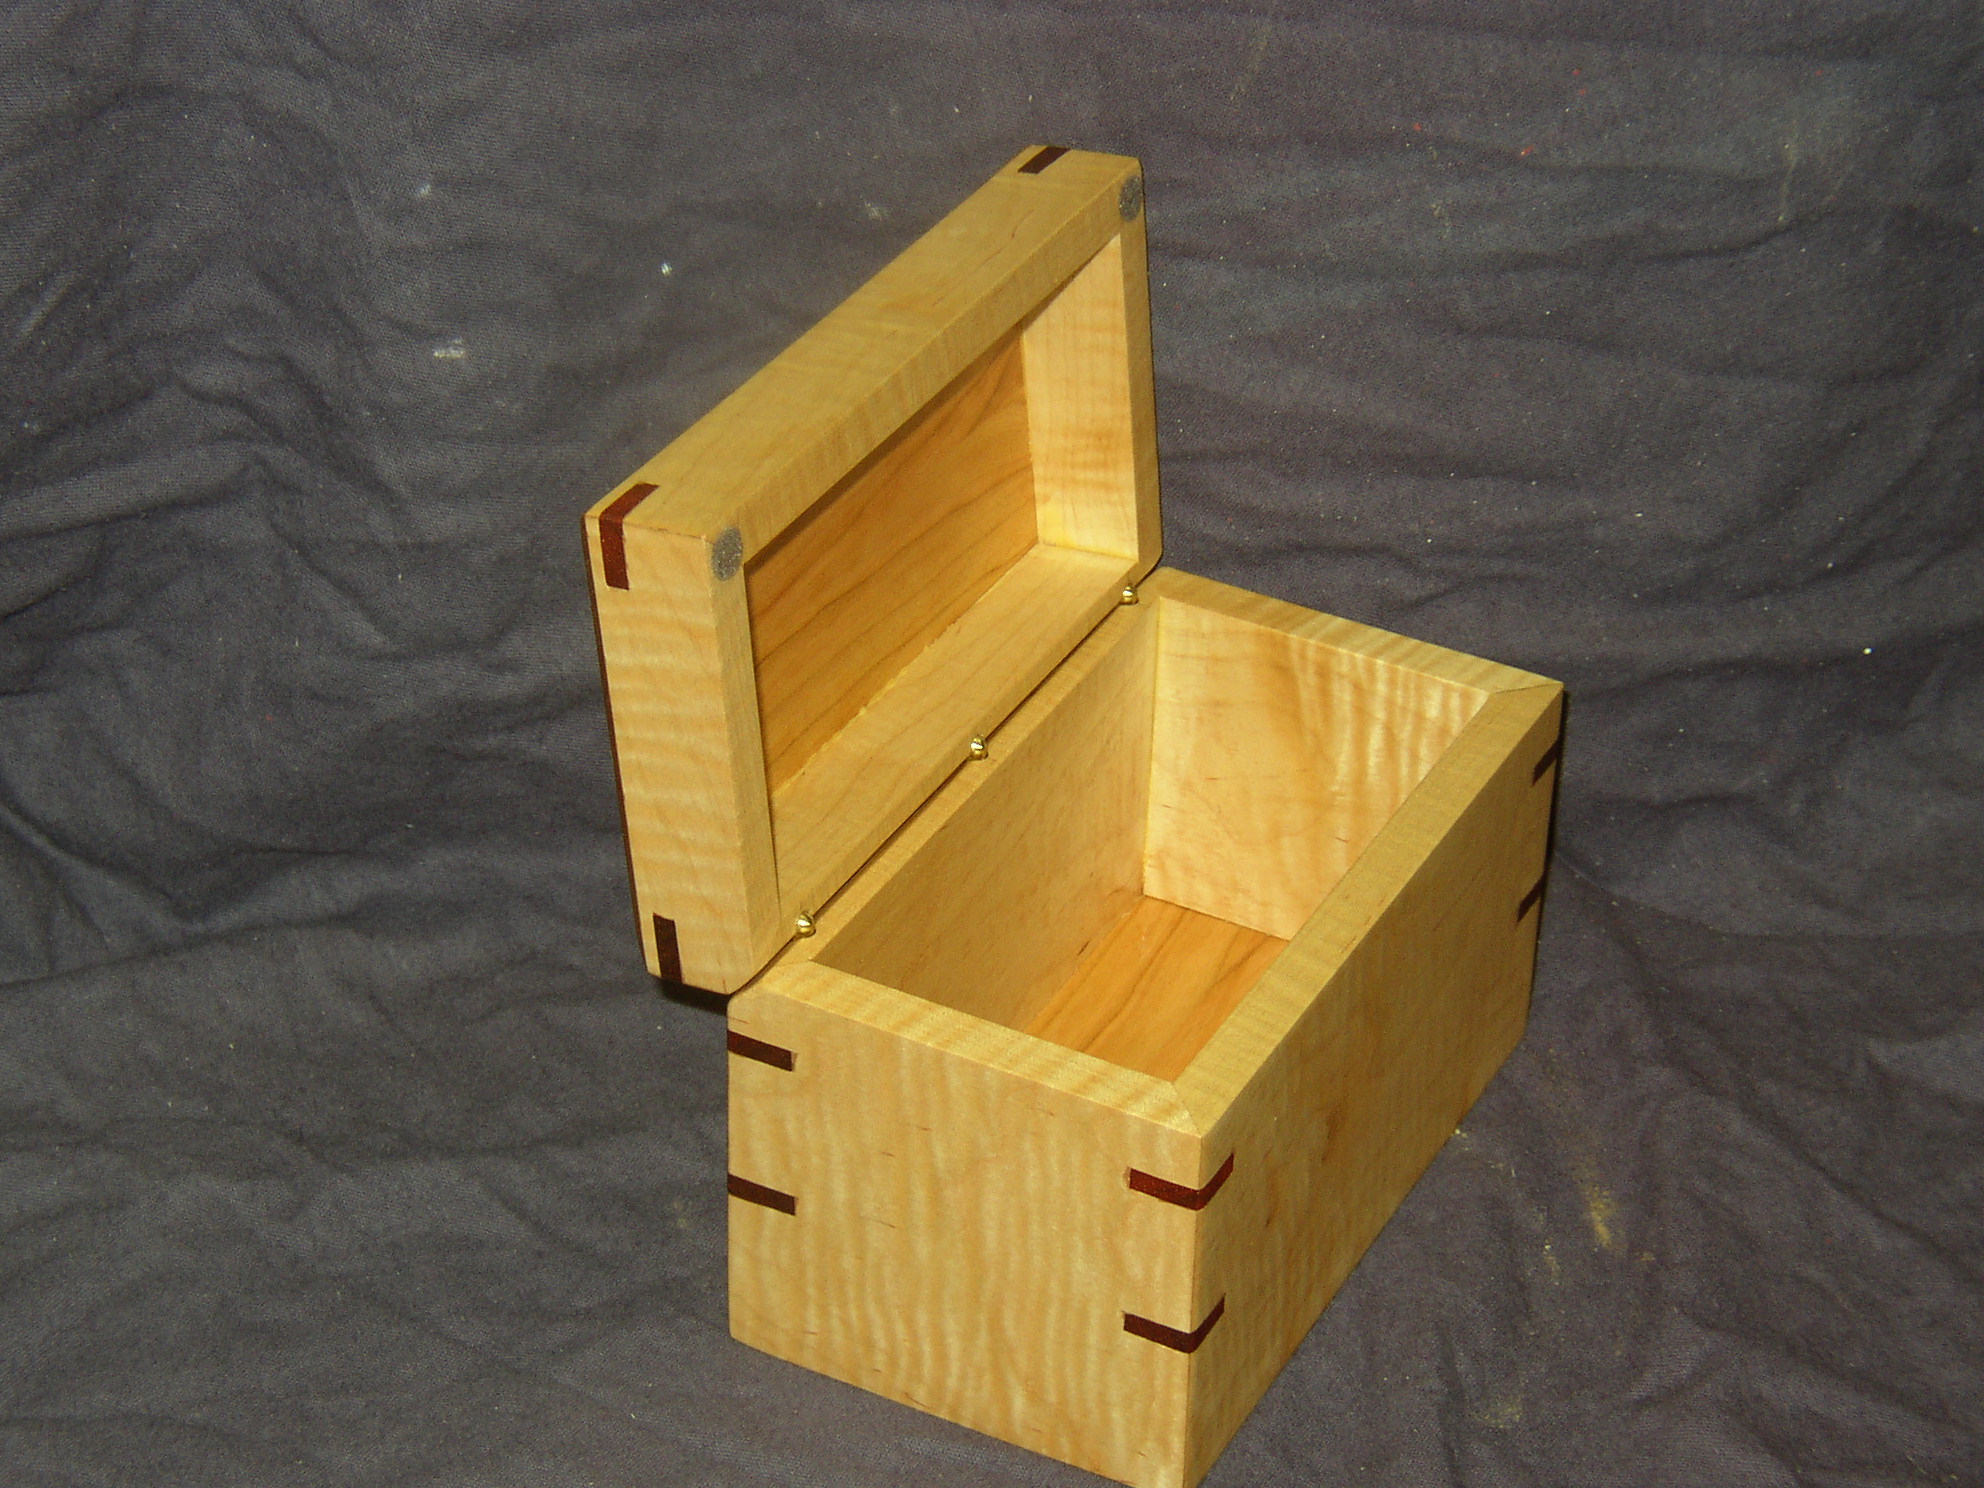 Recipe box prototype